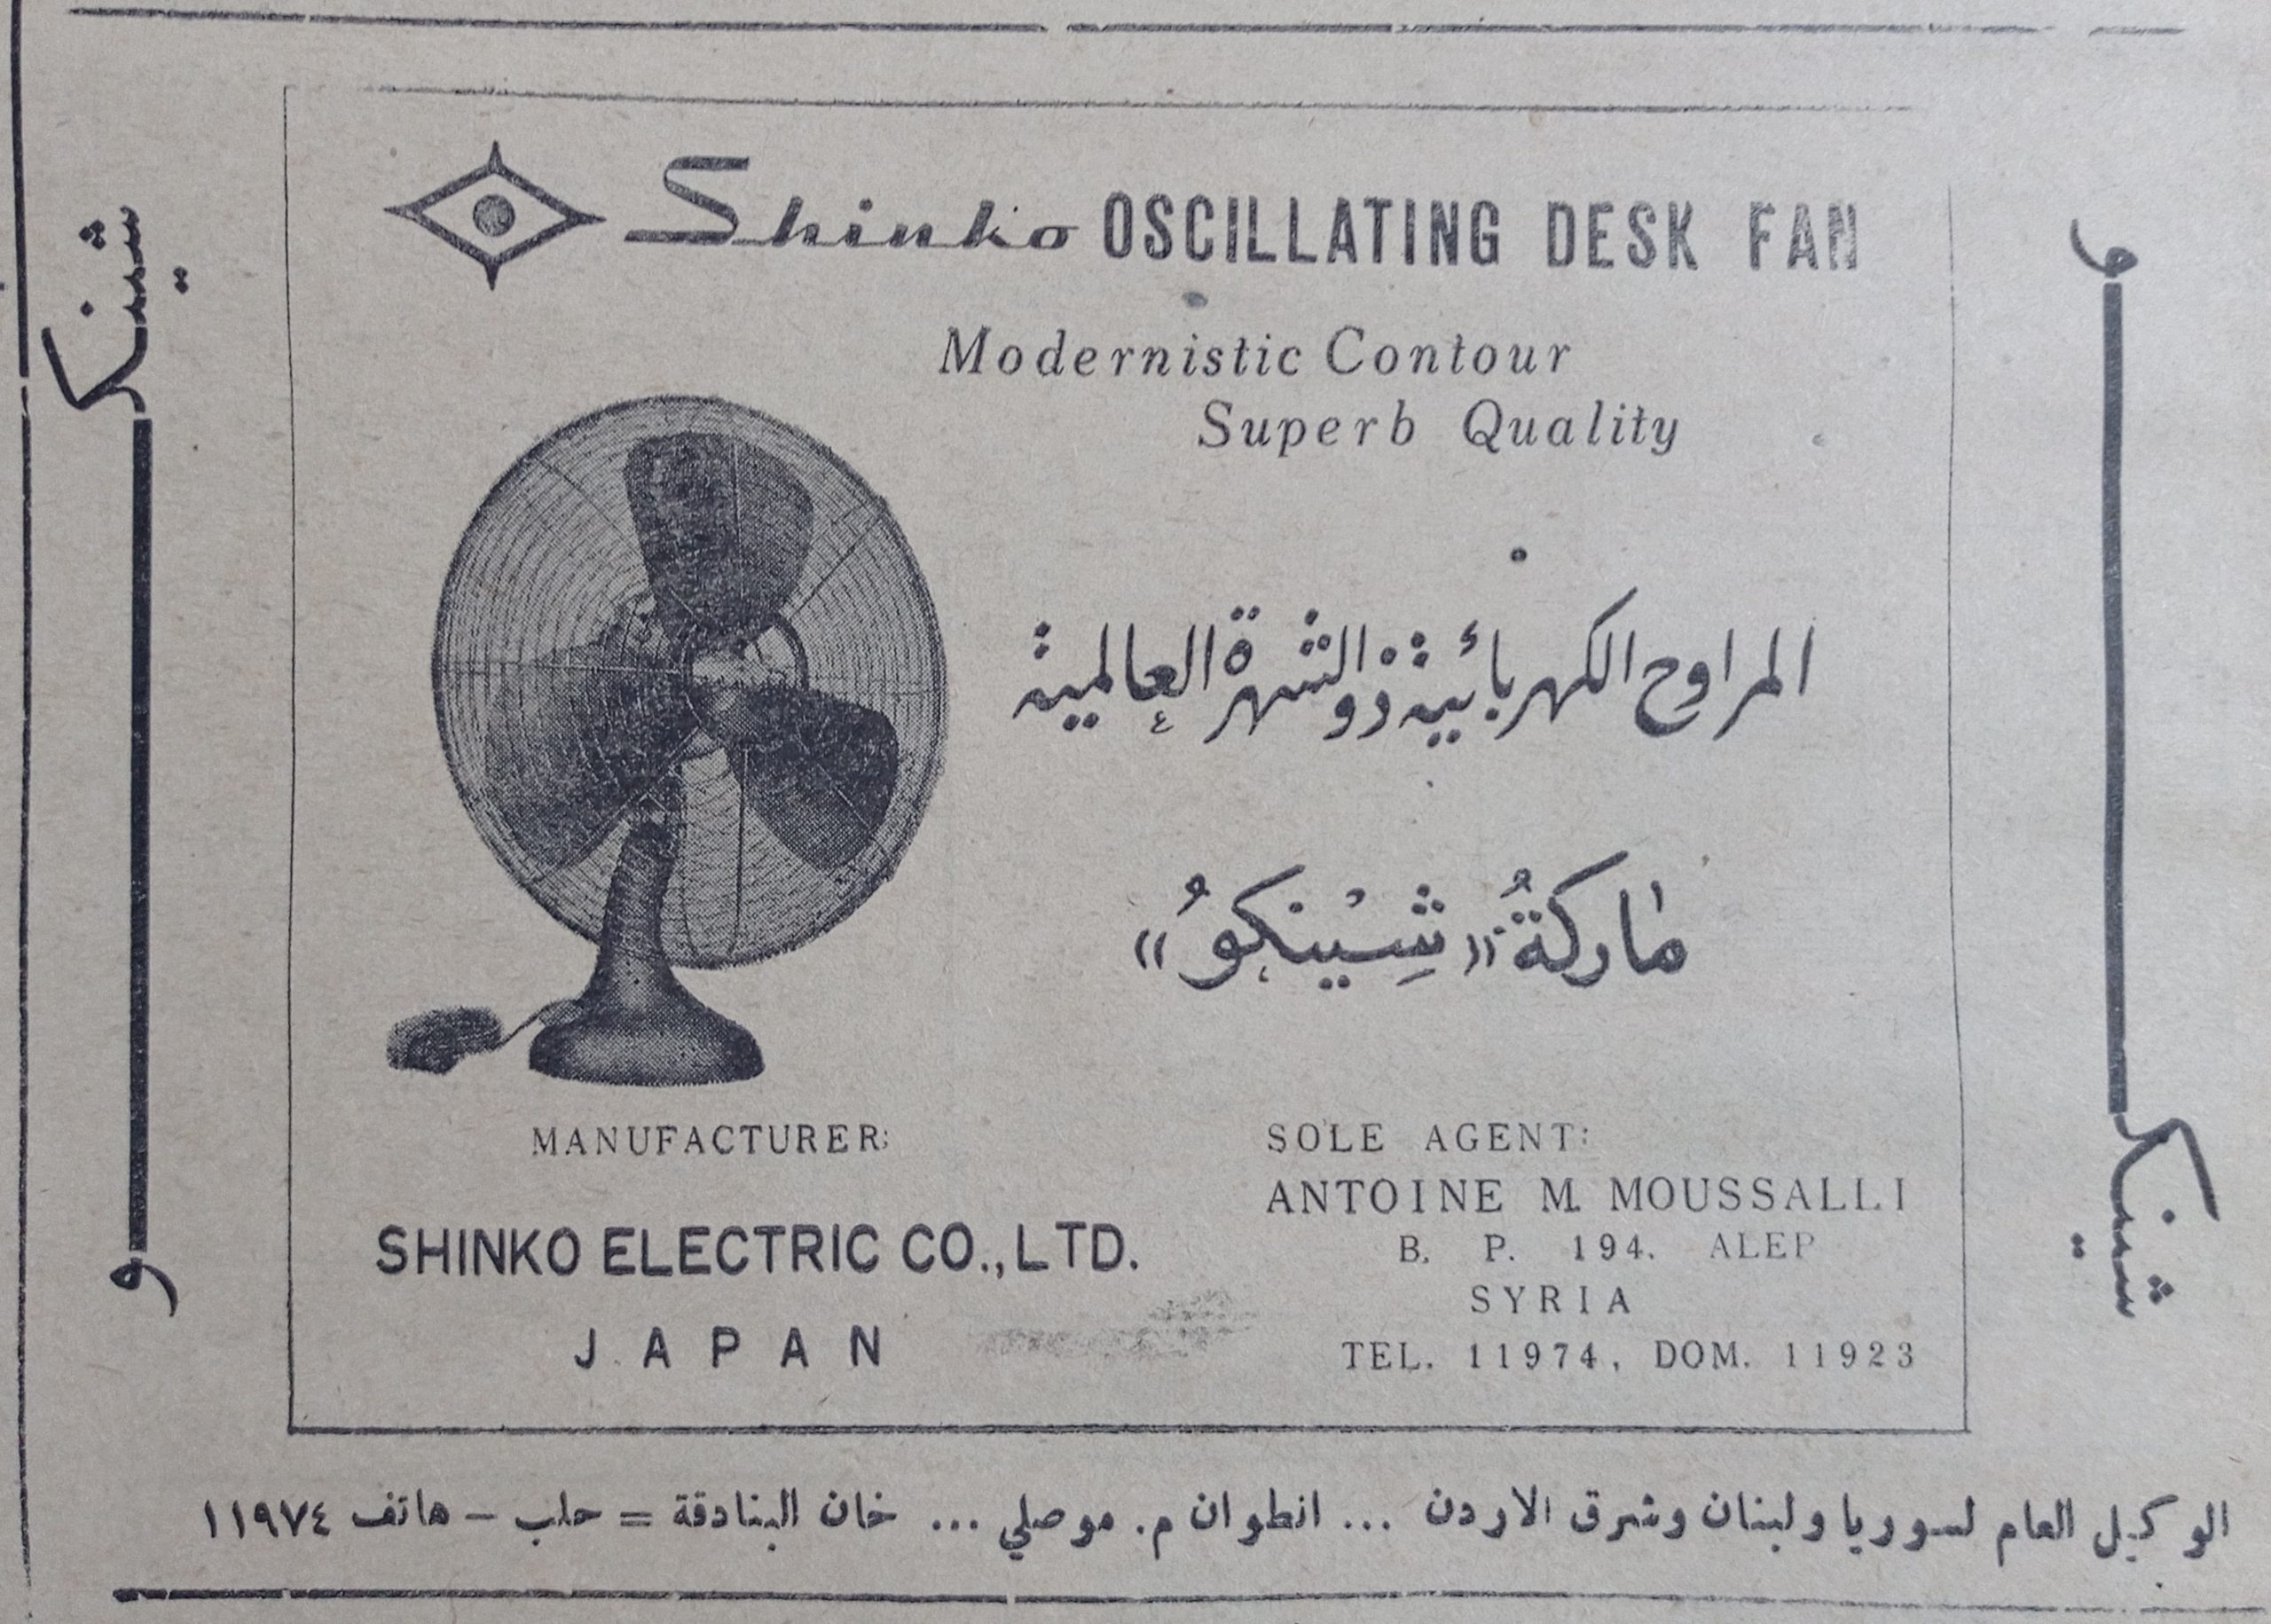 التاريخ السوري المعاصر - إعلان عن المراوح الكهربائية اليابانية ماركة (شينكو) عام 1956